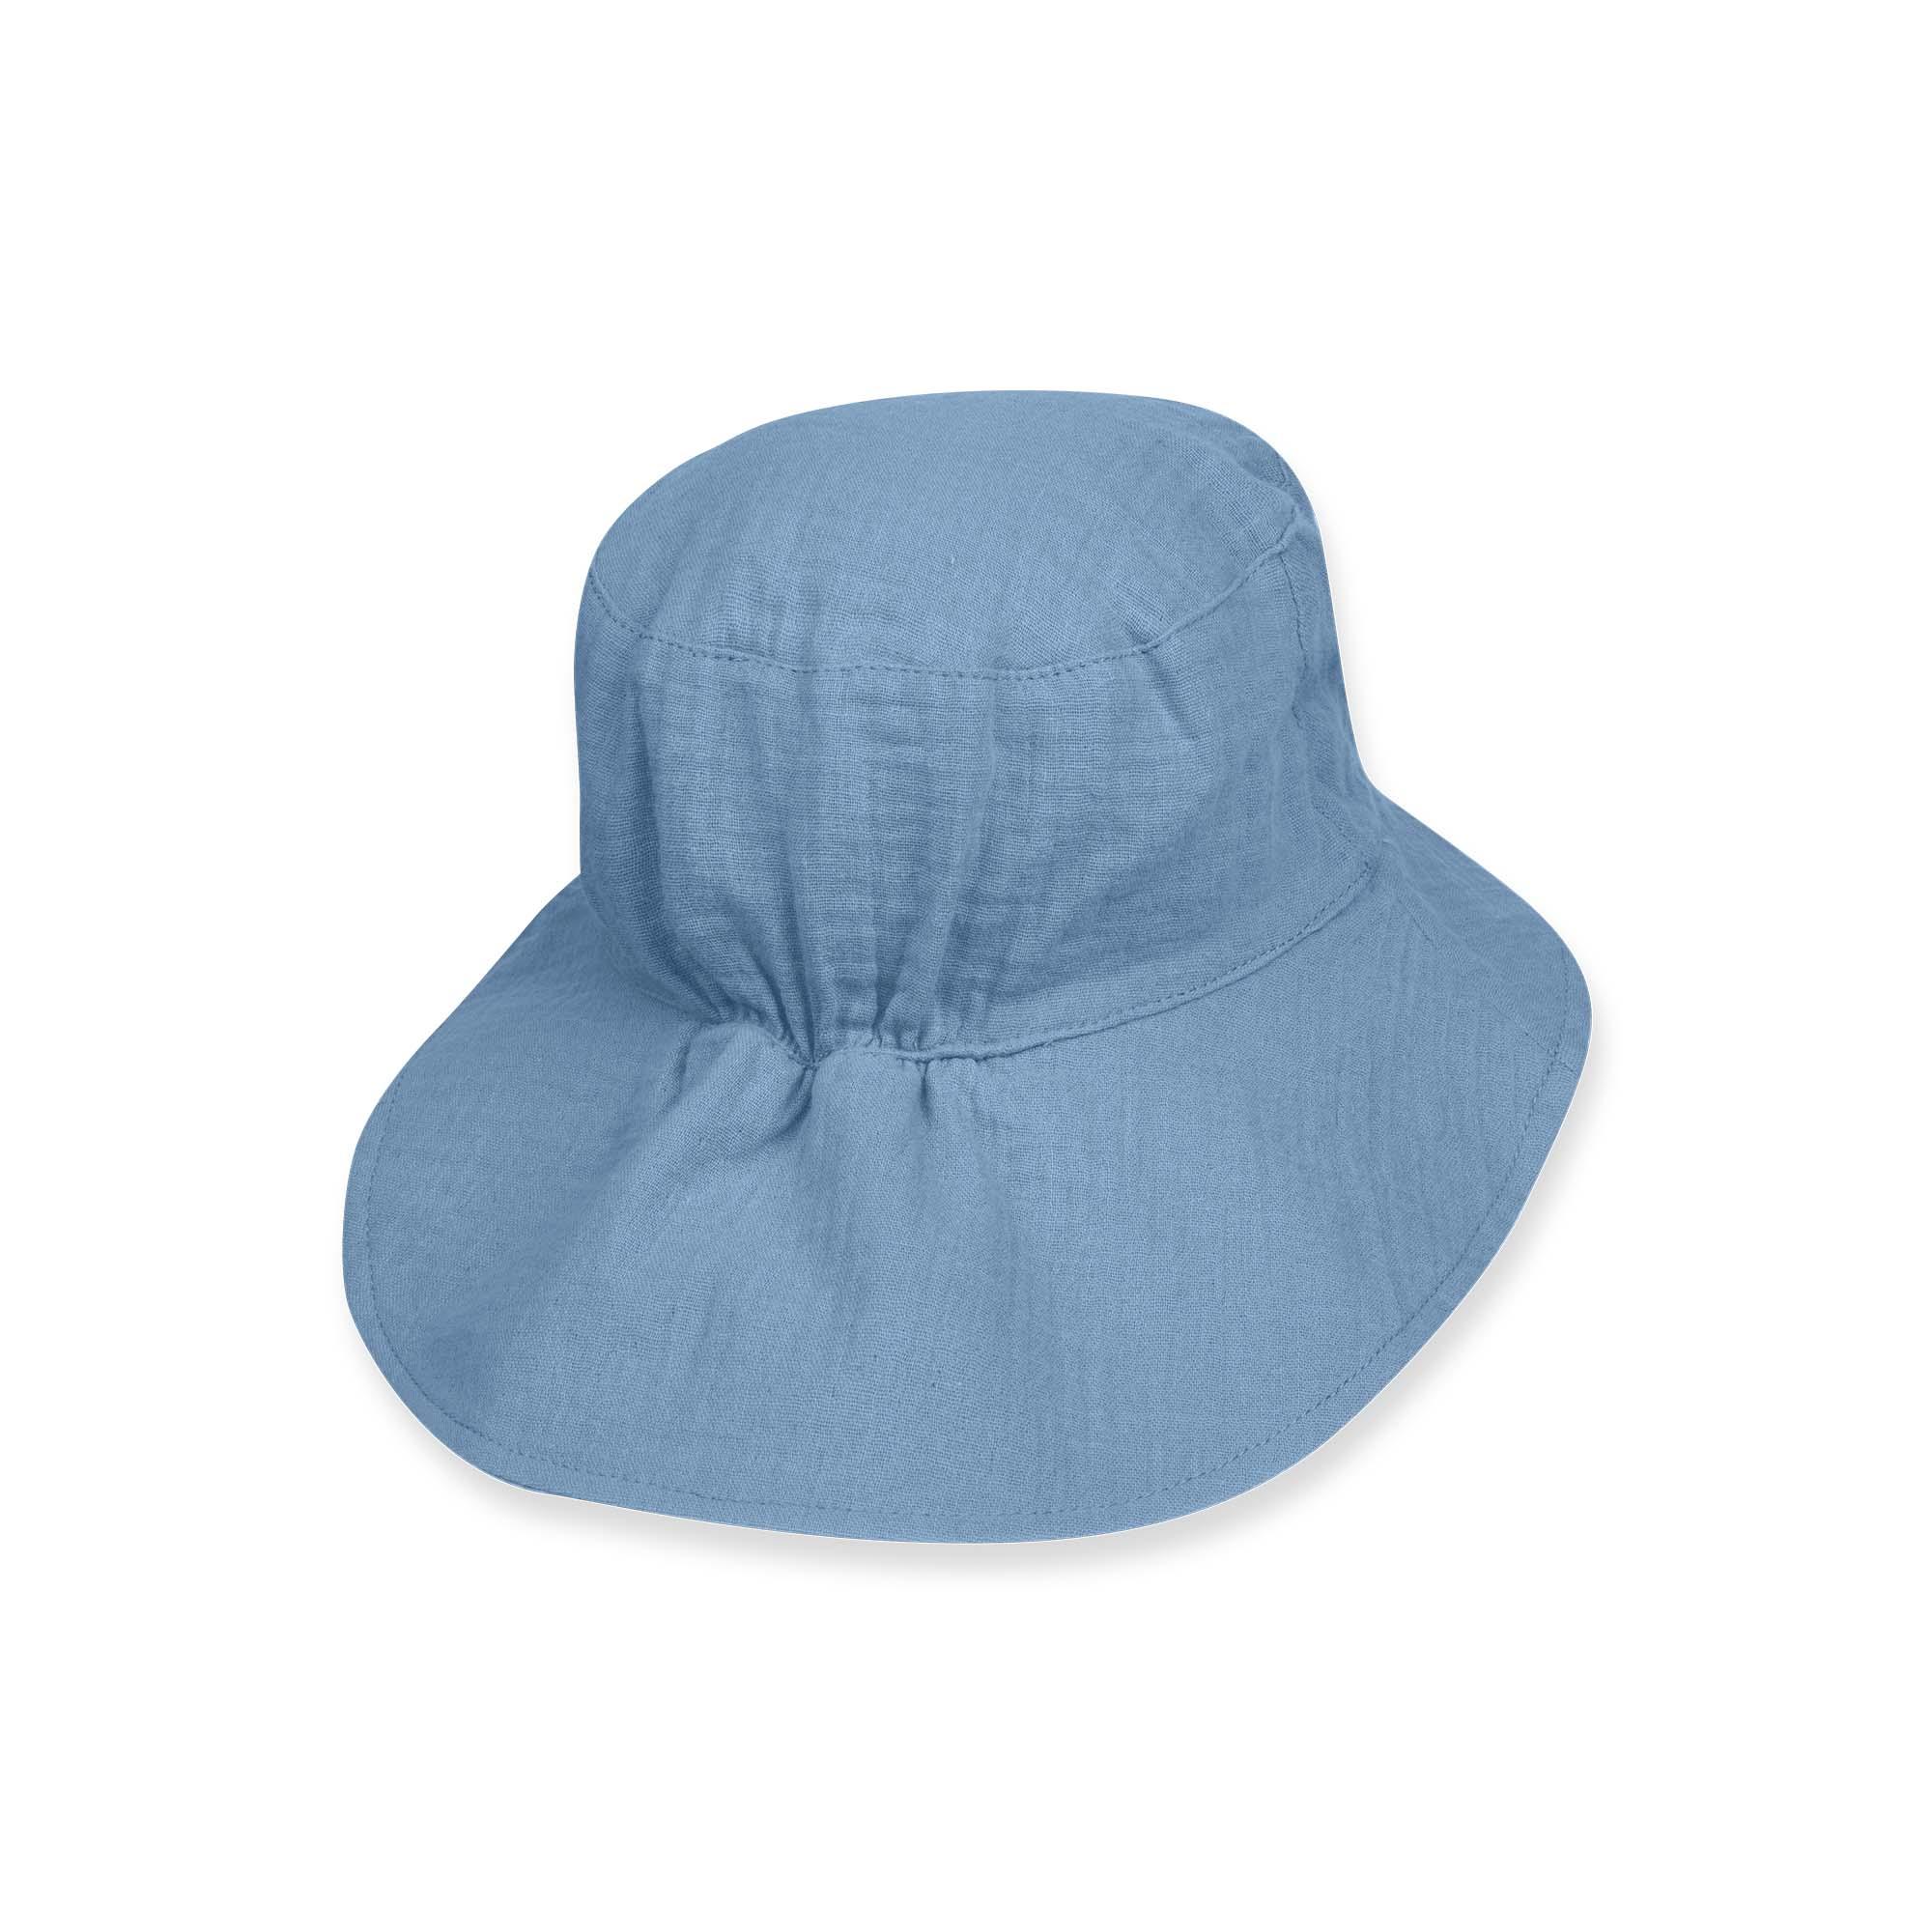 Błękitny kapelusz muślinowy